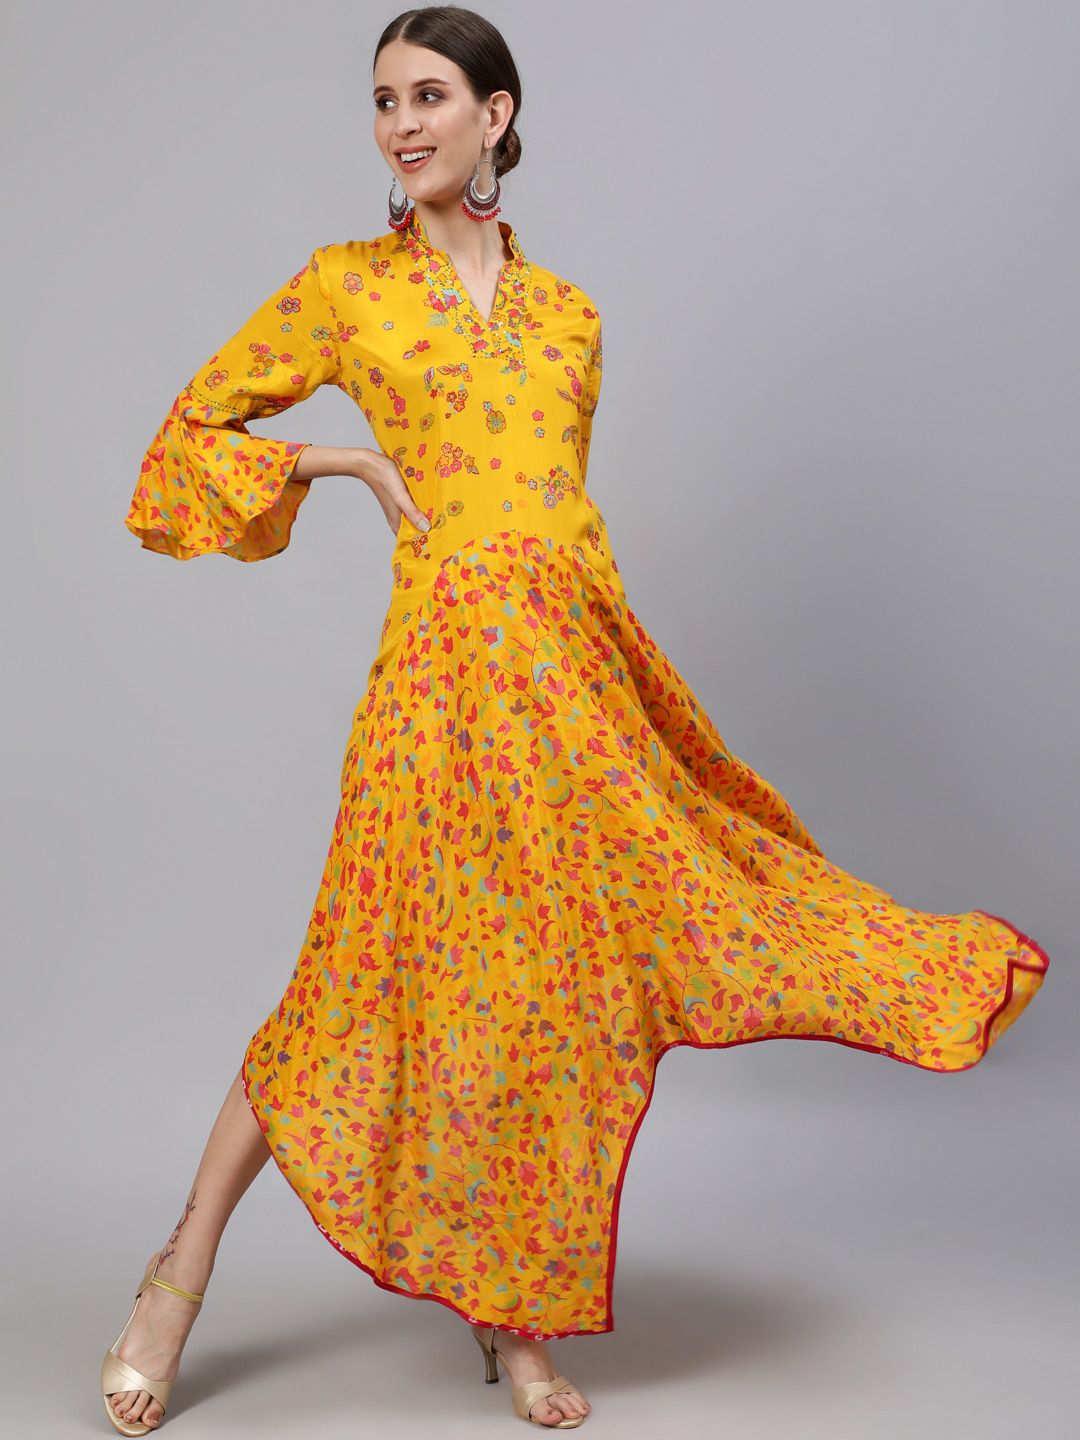 Ishin Mustard Yellow Floral PrintedMaxi Dress Price in India